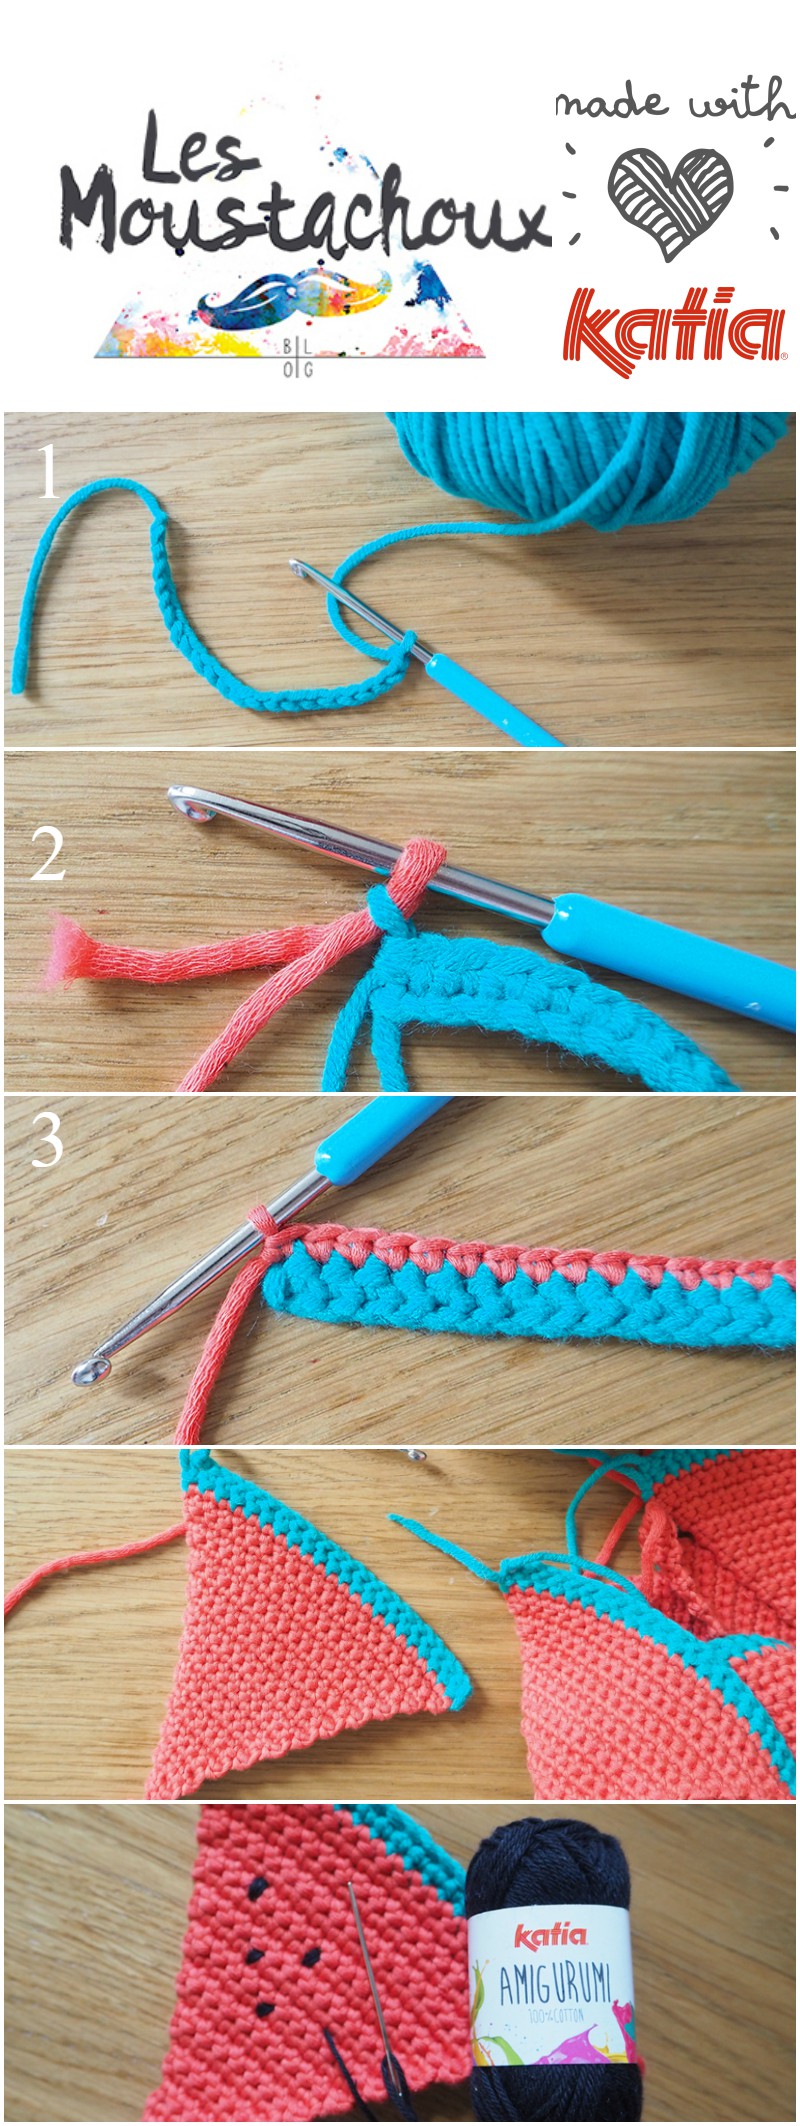 crochet-pasteque-guirlande-katia-moustachoux-DIY